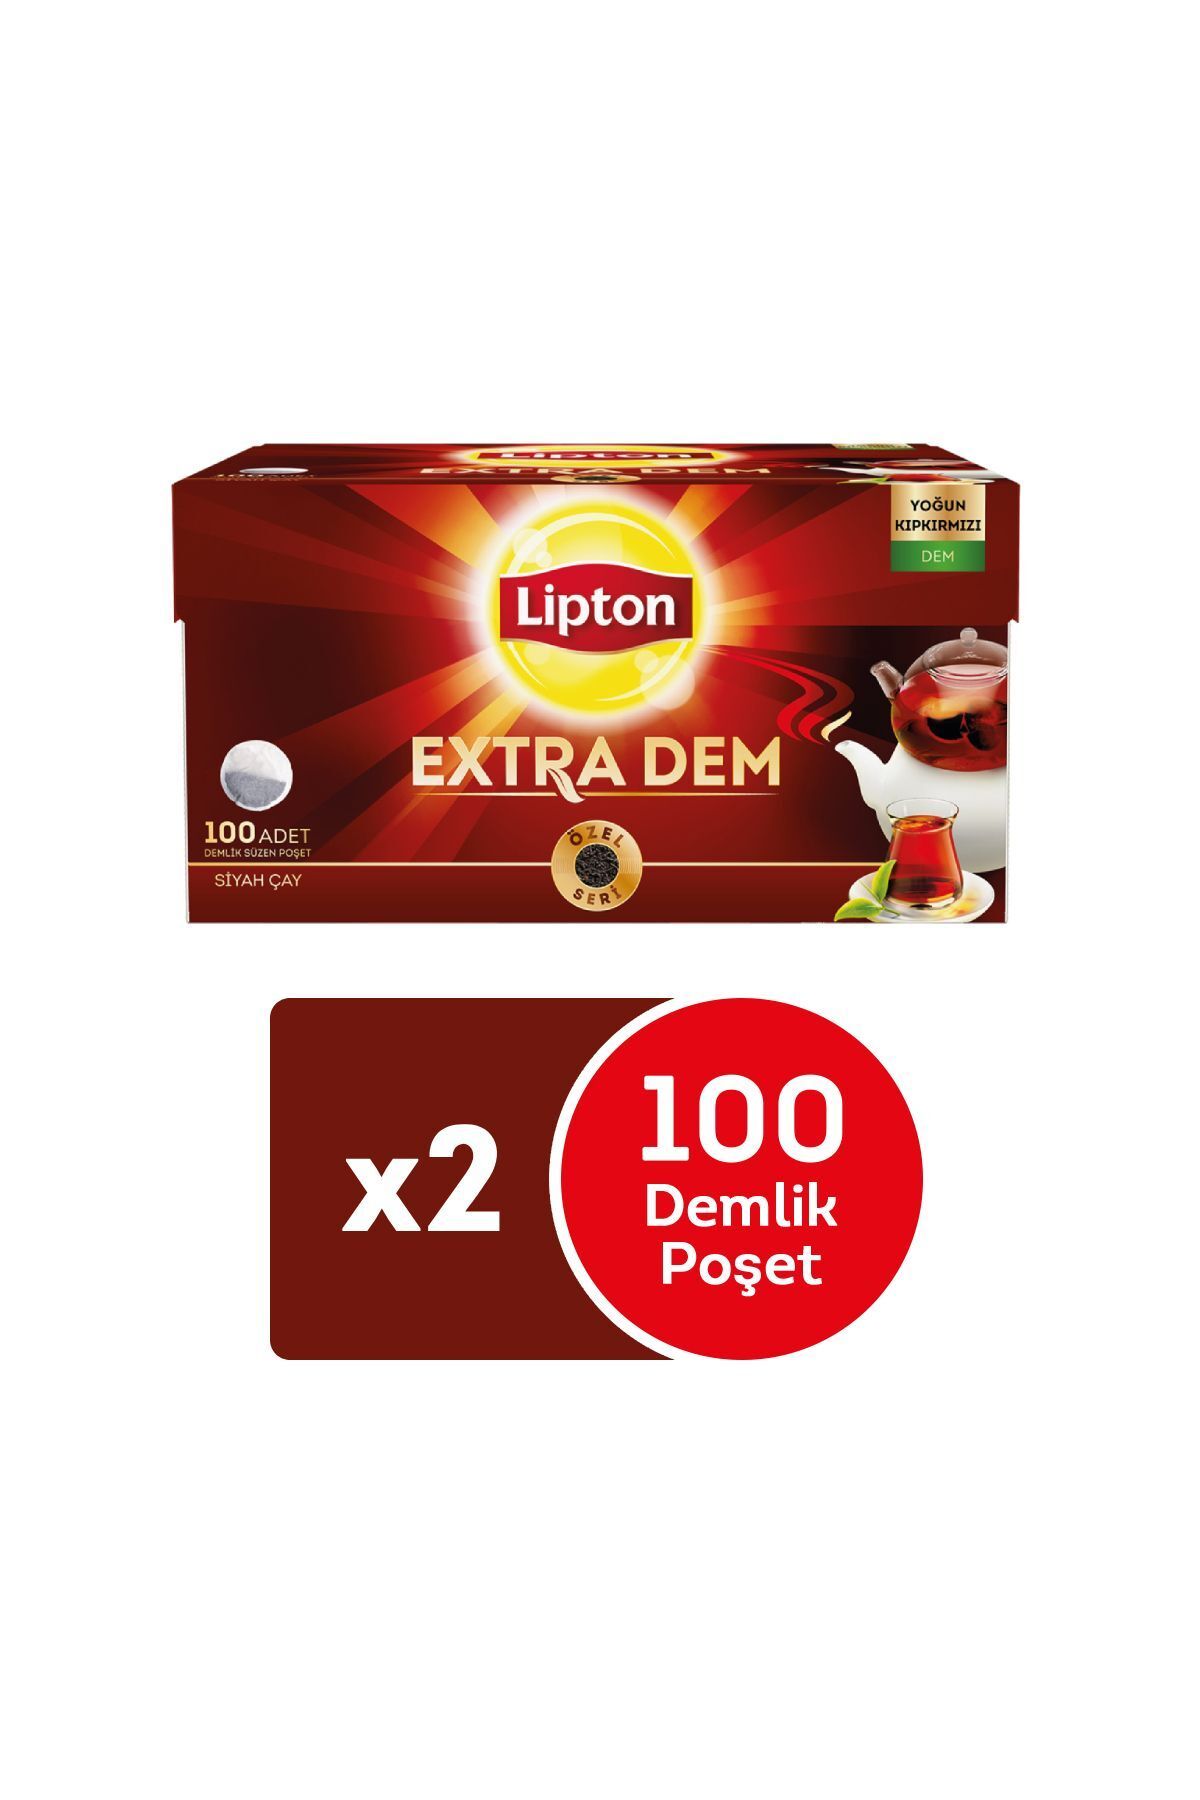 Lipton Extra Dem Demlik Poşet Çay 100'lü x 2 Adet